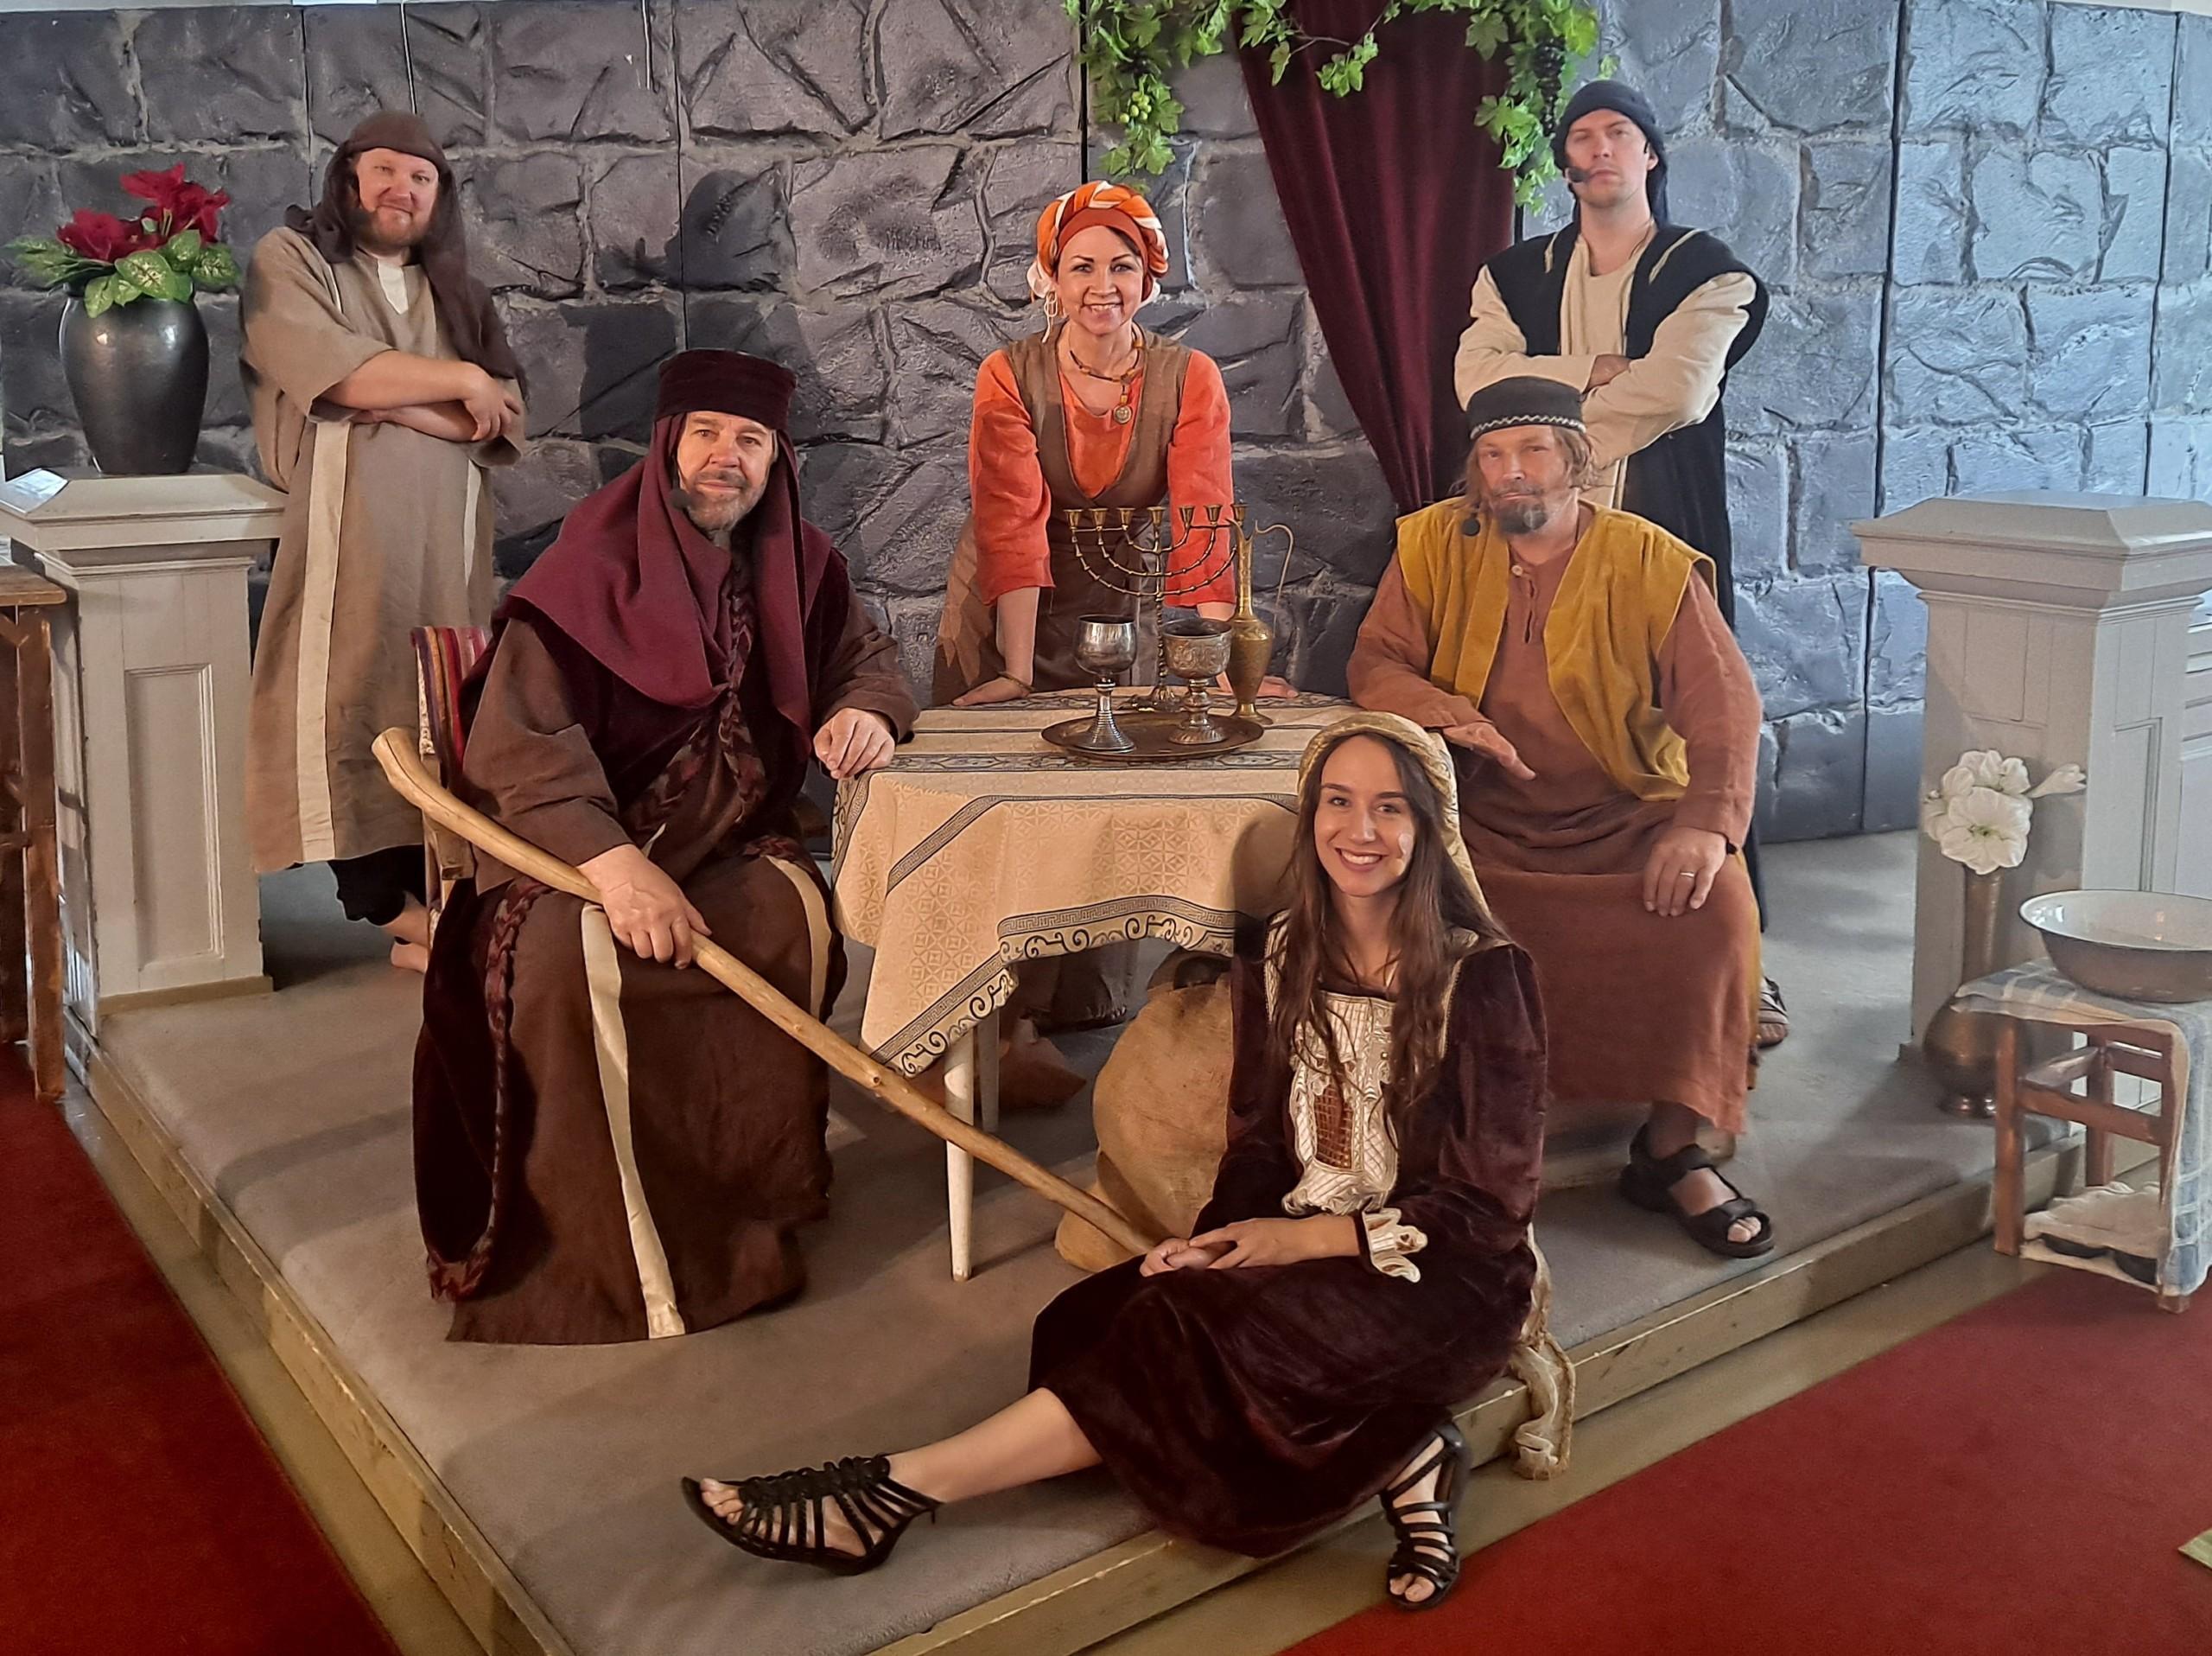 6 näyttelijää lavasteiden keskellä raamatunaikaisissa roolivaatteissa. Katsovat kameraan hymyillen.